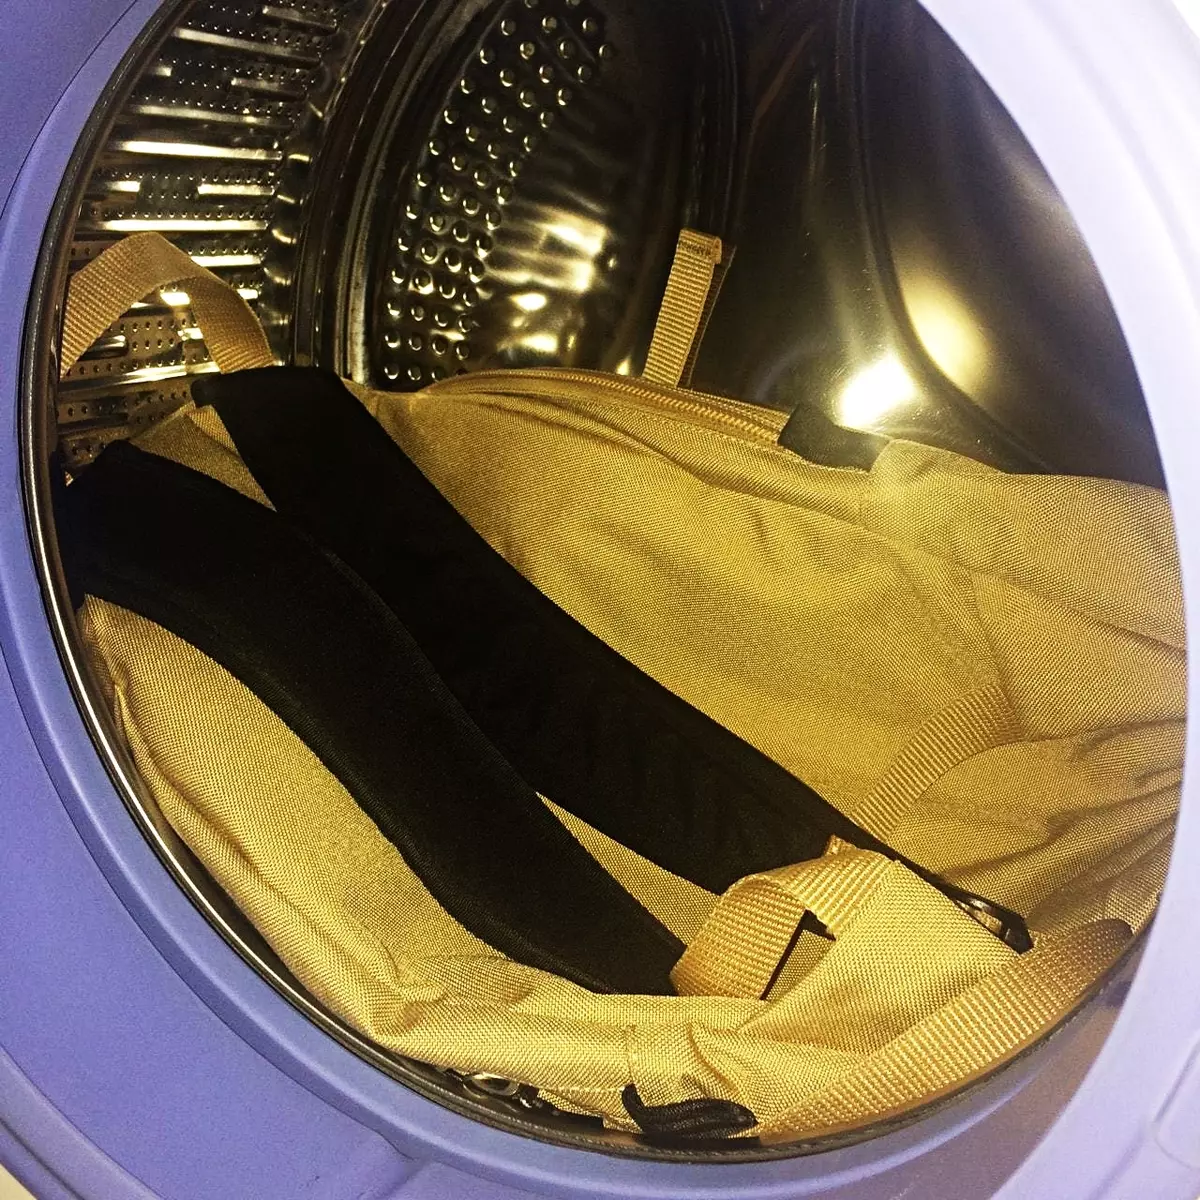 배낭을 씻는 방법? 세탁기에서 씻을 수 있습니까? 집에서 단단한 프레임으로 학교 배낭을 청소하는 방법은 무엇입니까? 2597_4